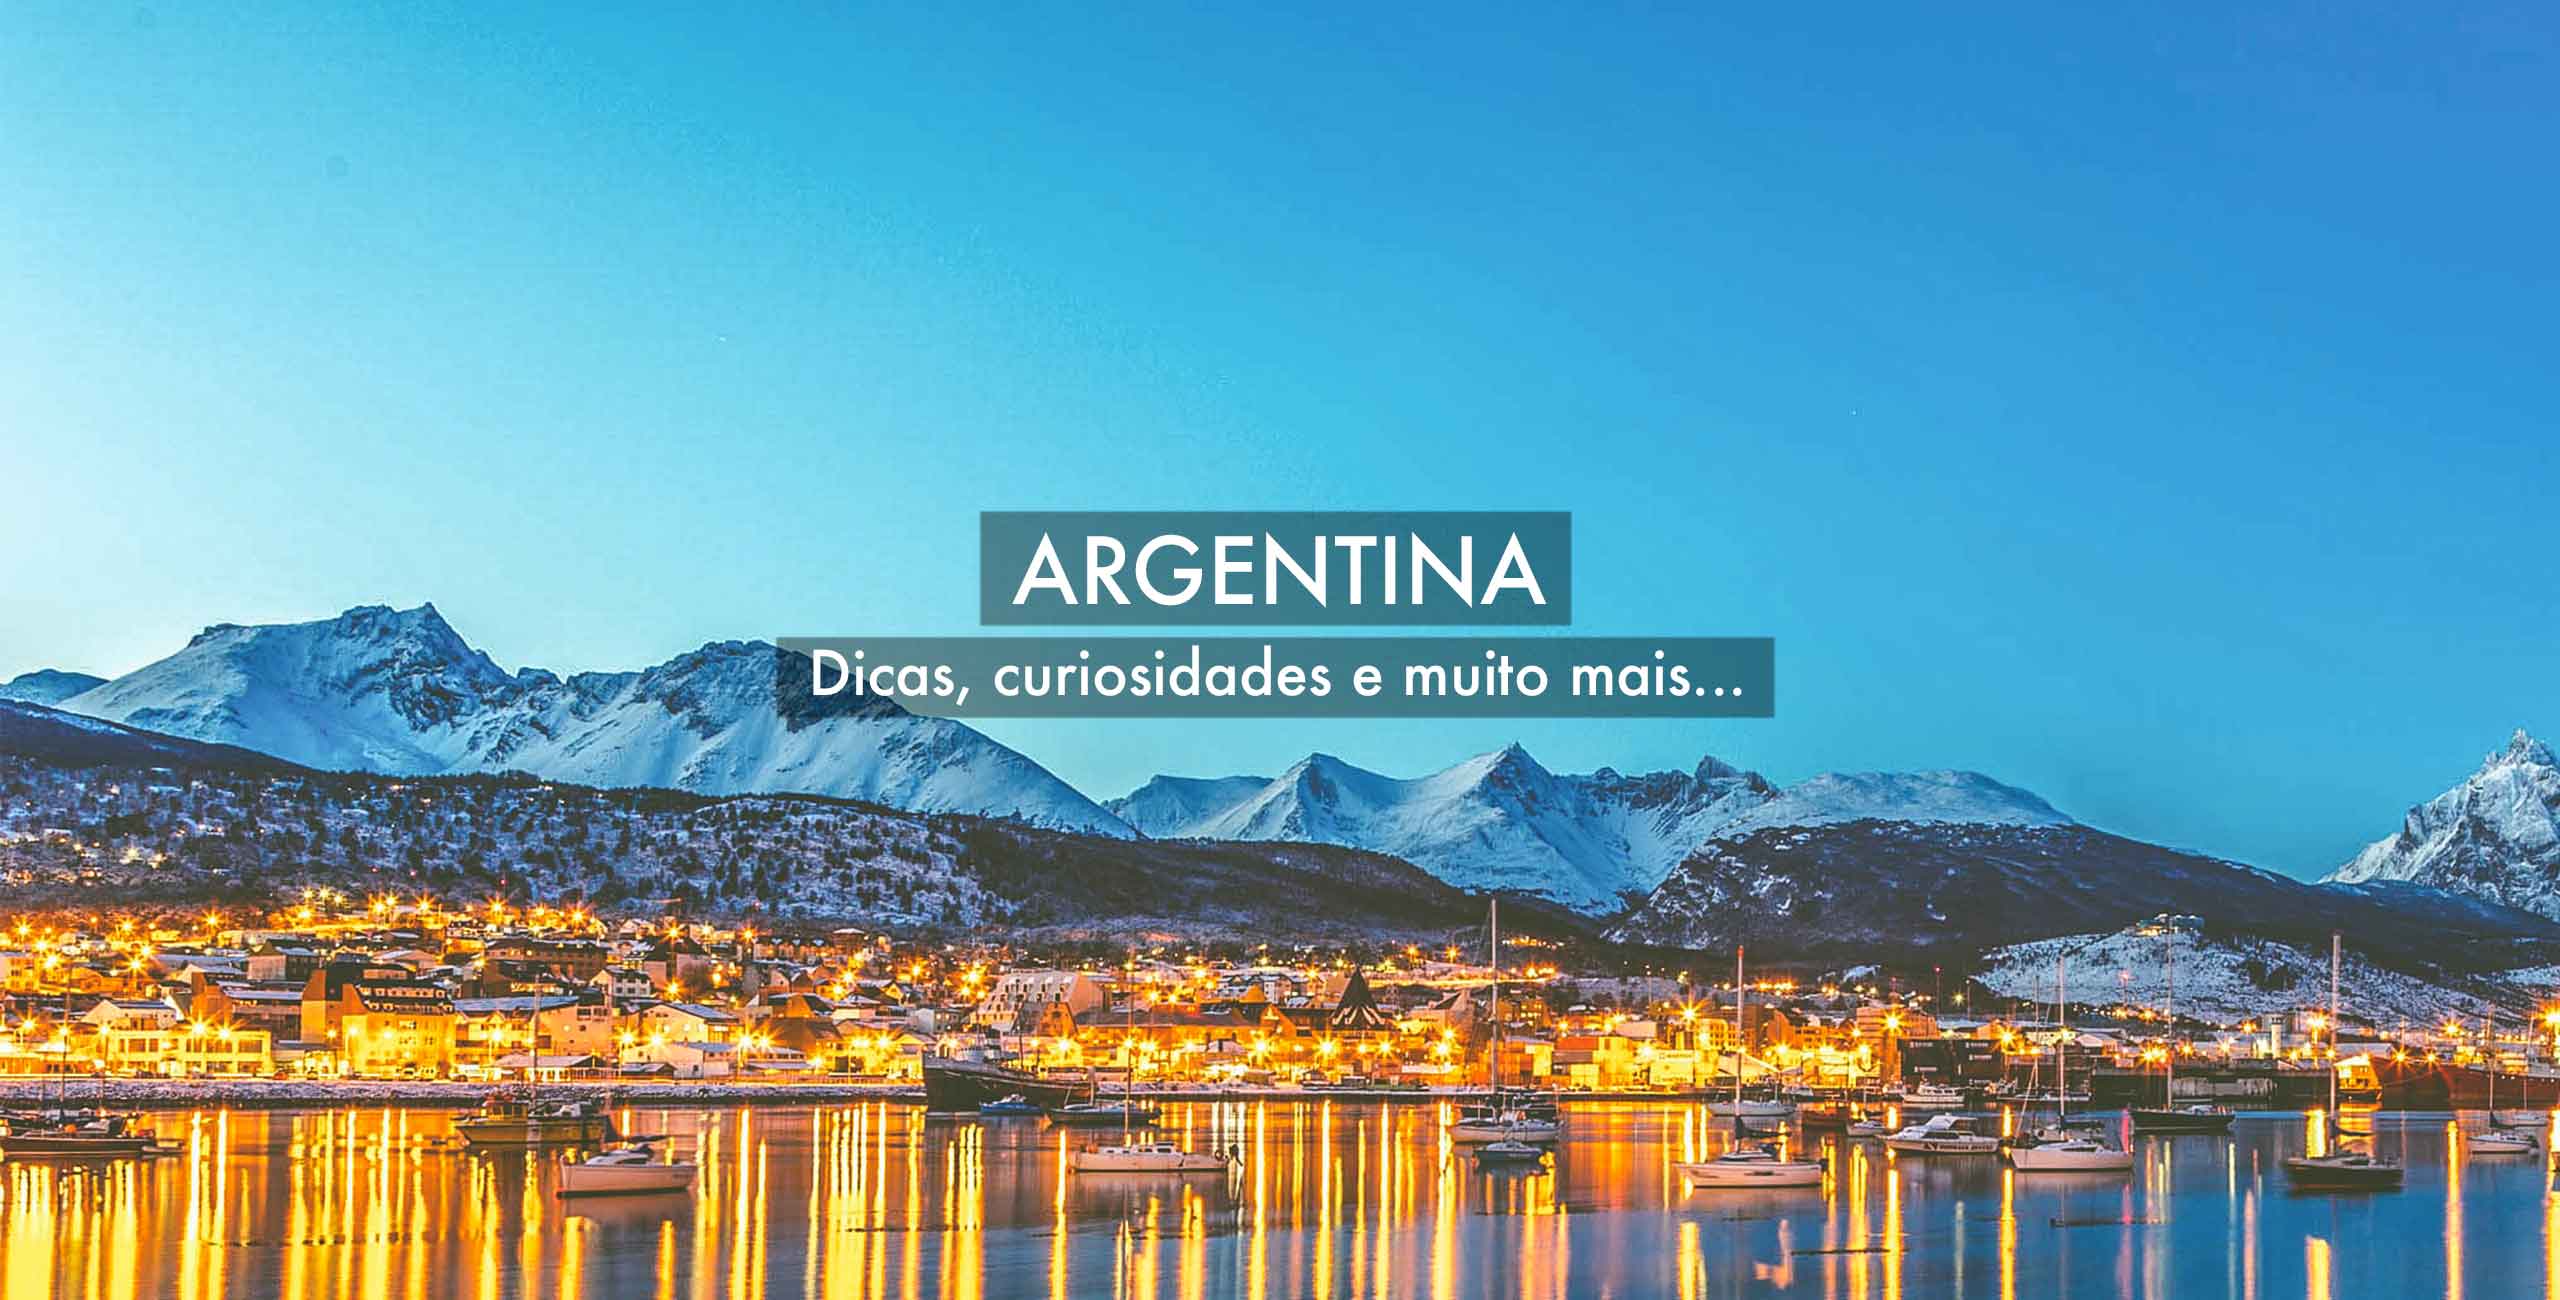 2 - Da Província de Buenos Aires à Patagonia - De Carro Pelo Mundo